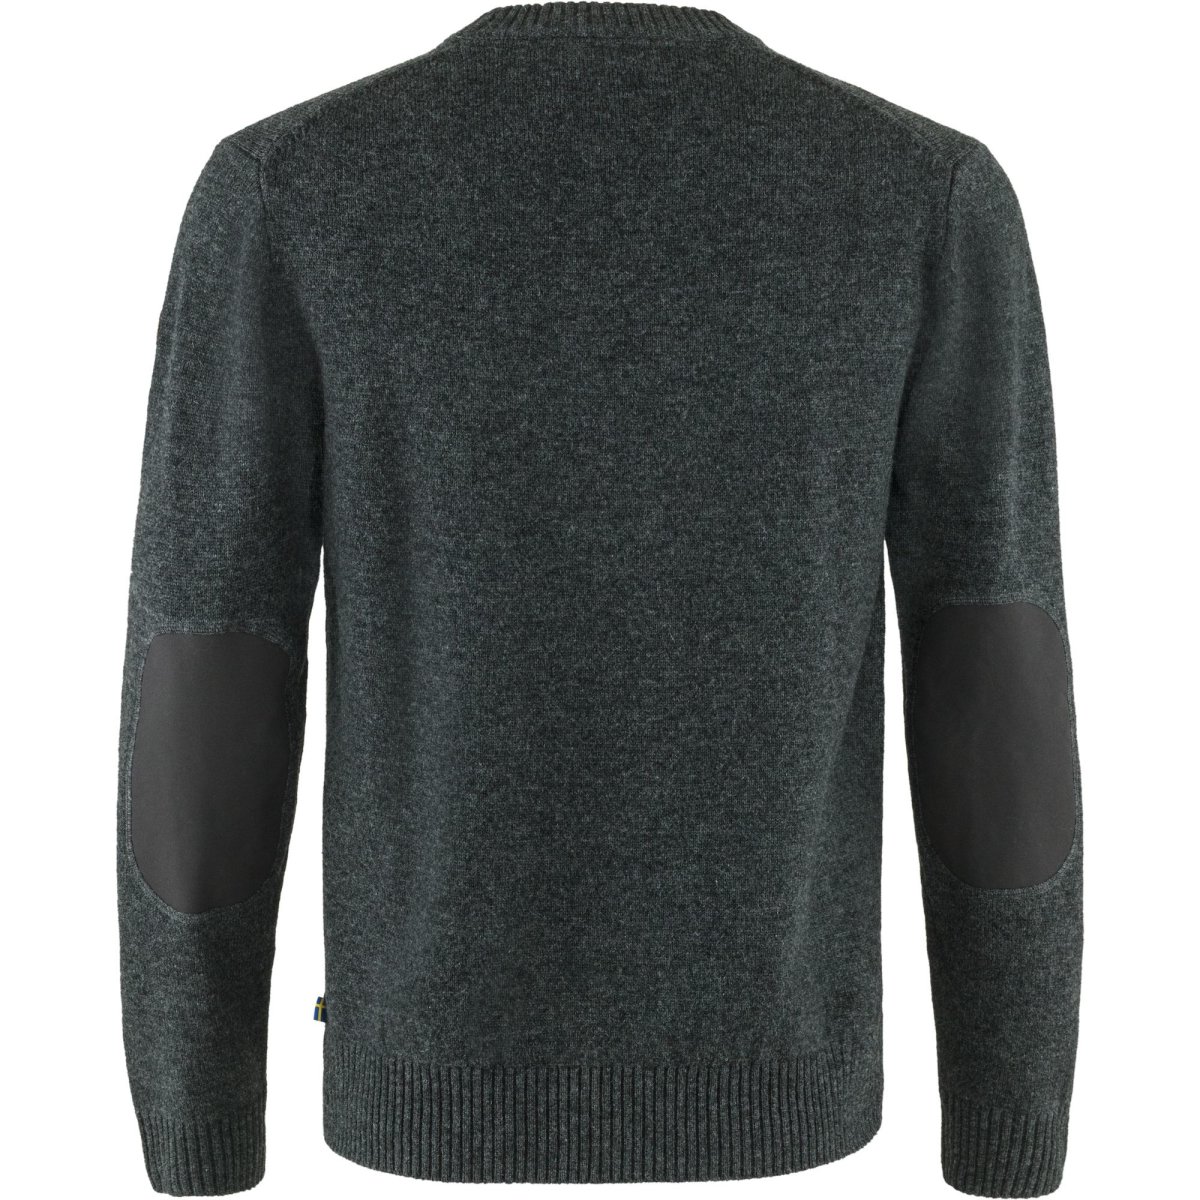 Fj&auml;llr&auml;ven &Ouml;vik Round-Neck Sweater 87323 dark grey Herren Pullover Rundhals Strickpullover